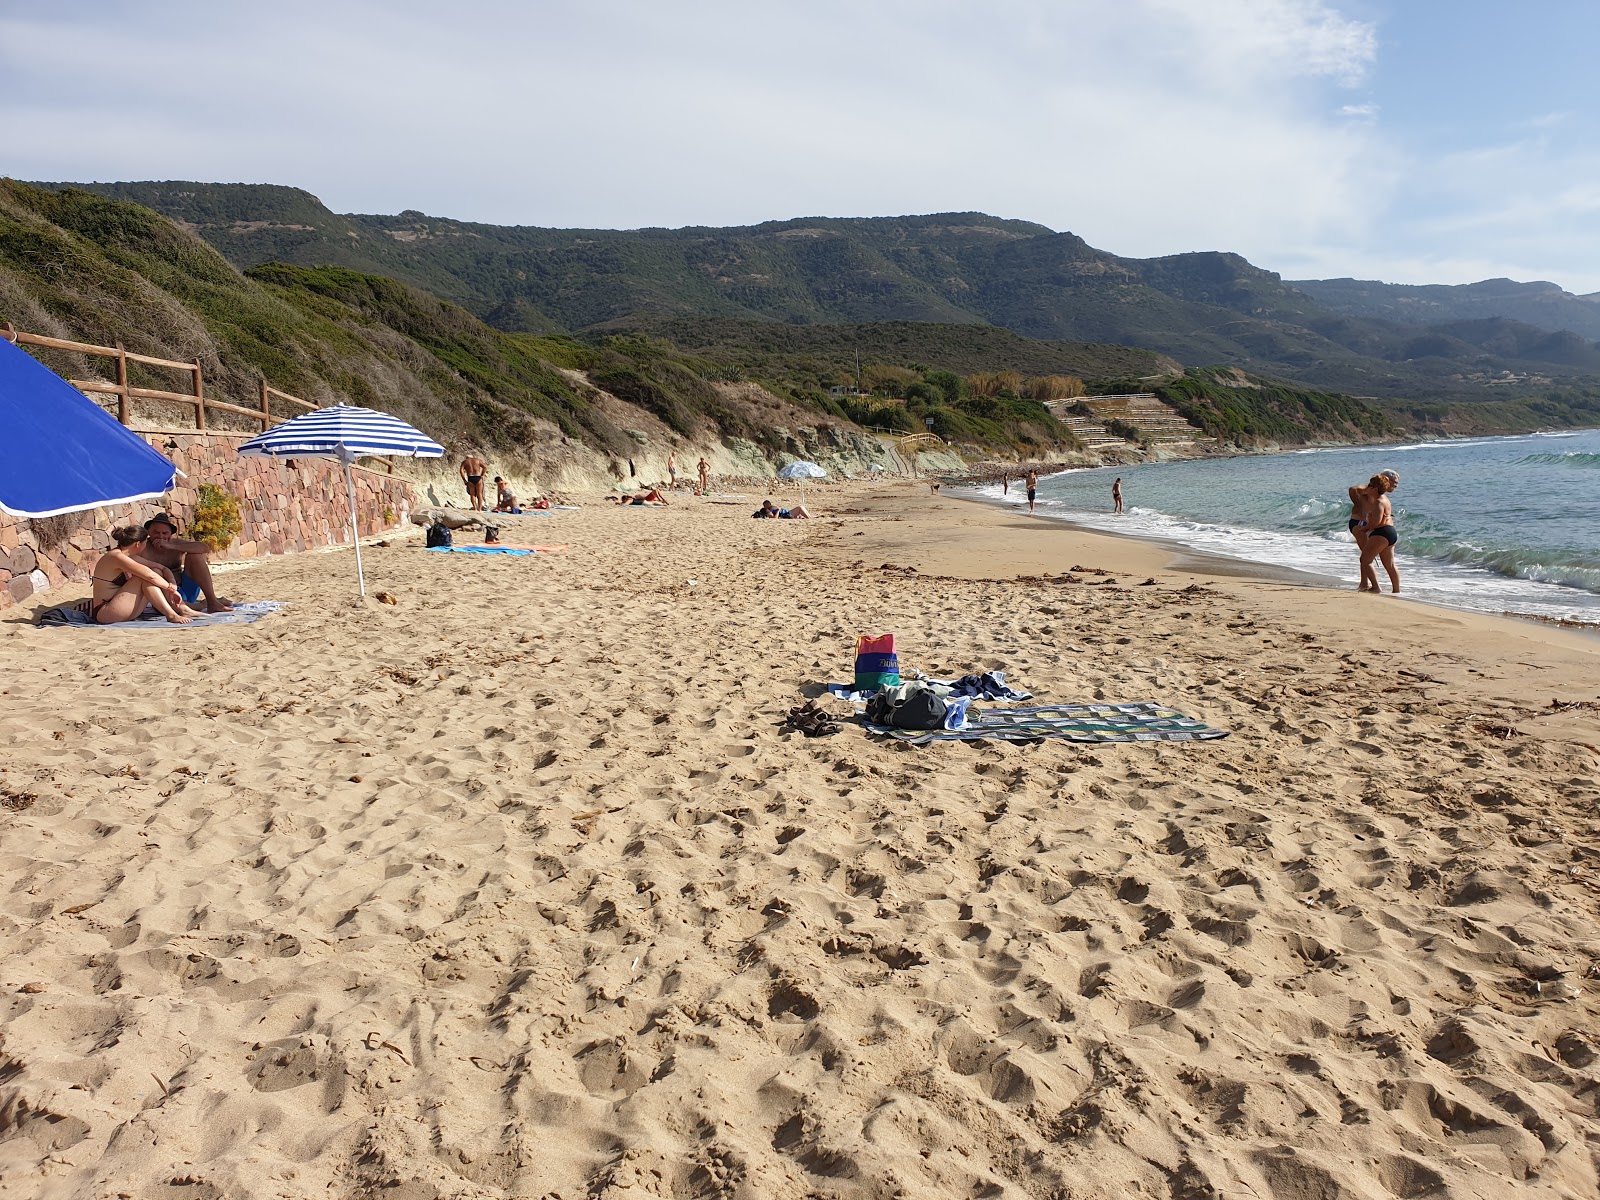 Zdjęcie Pogline beach z poziomem czystości głoska bezdźwięczna